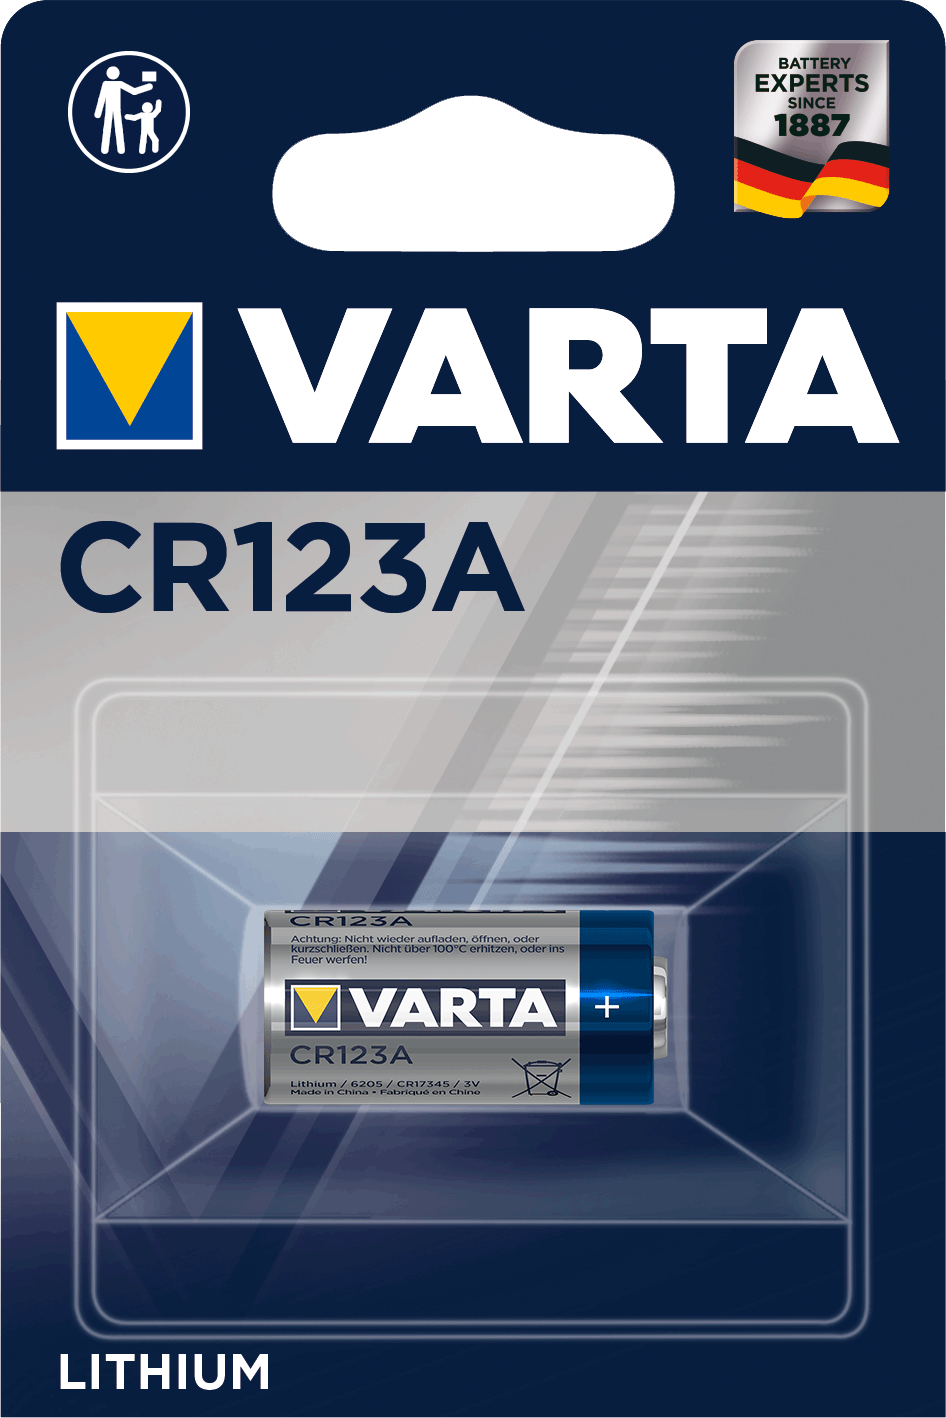 Lithium Cylindrical CR123A von Varta.